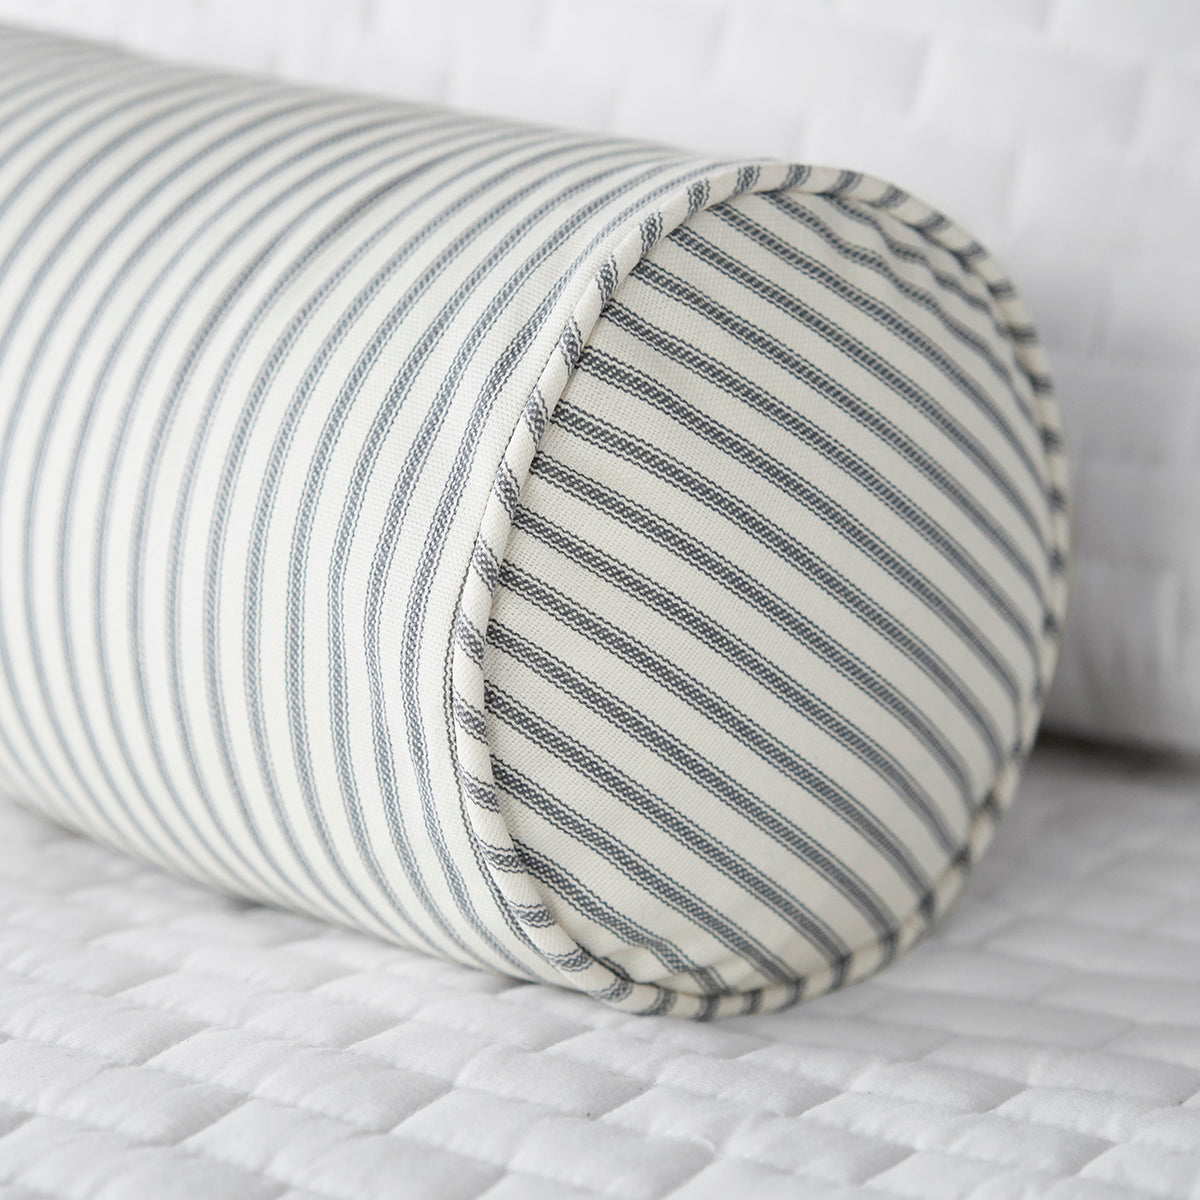 Gray Ticking Stripe Bolster Pillow on White Bed